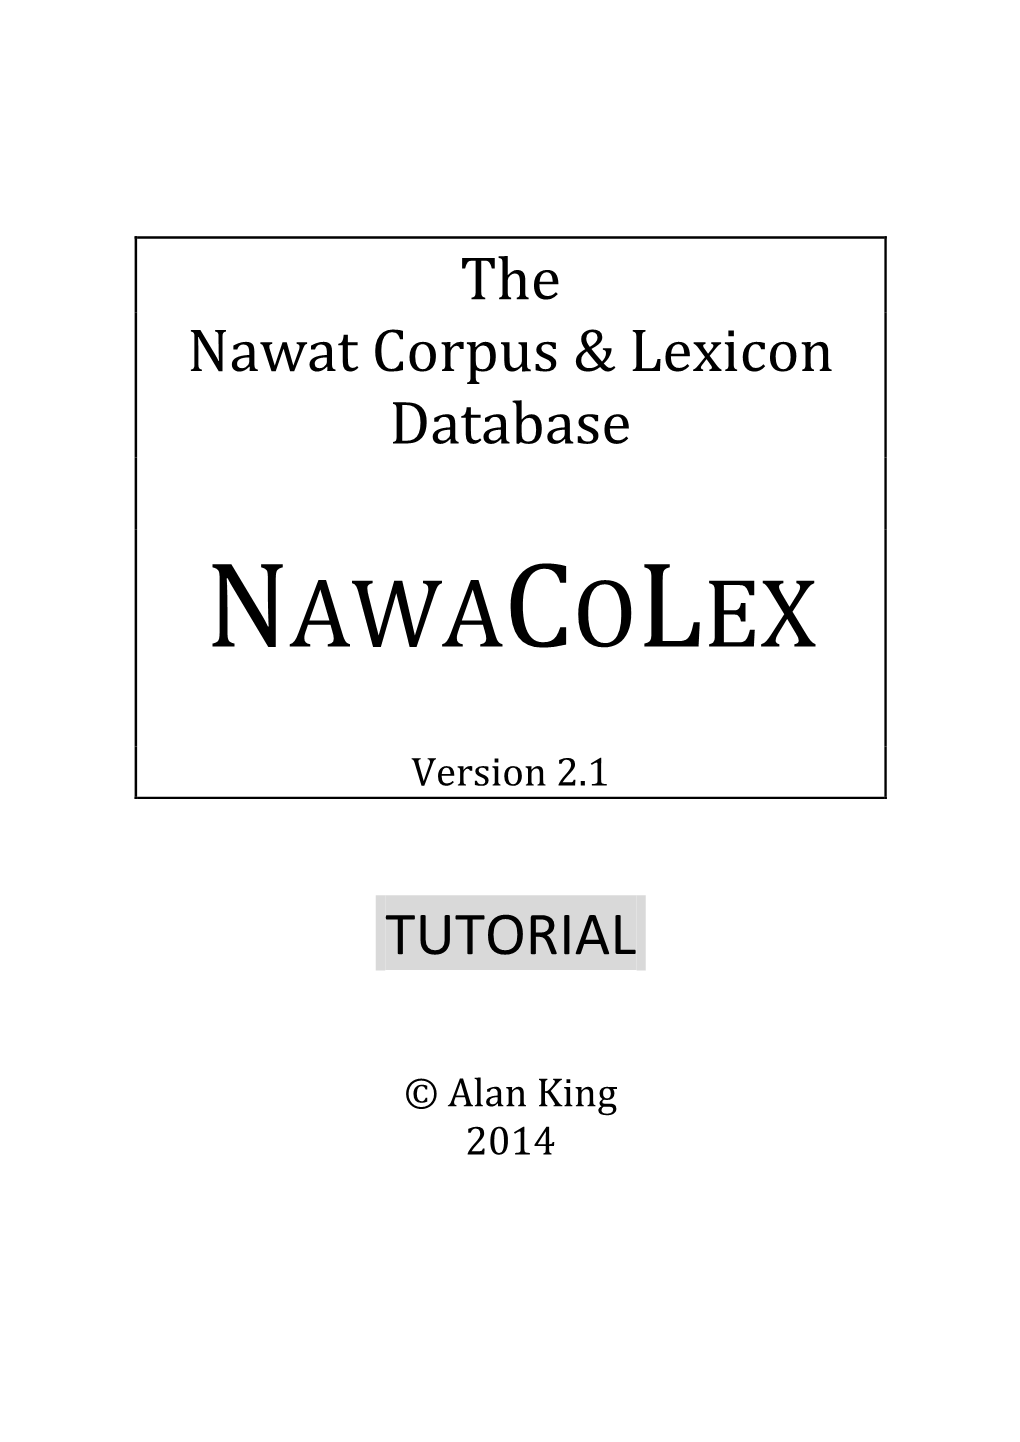 Download the Nawacolex 2.1 Tutorial